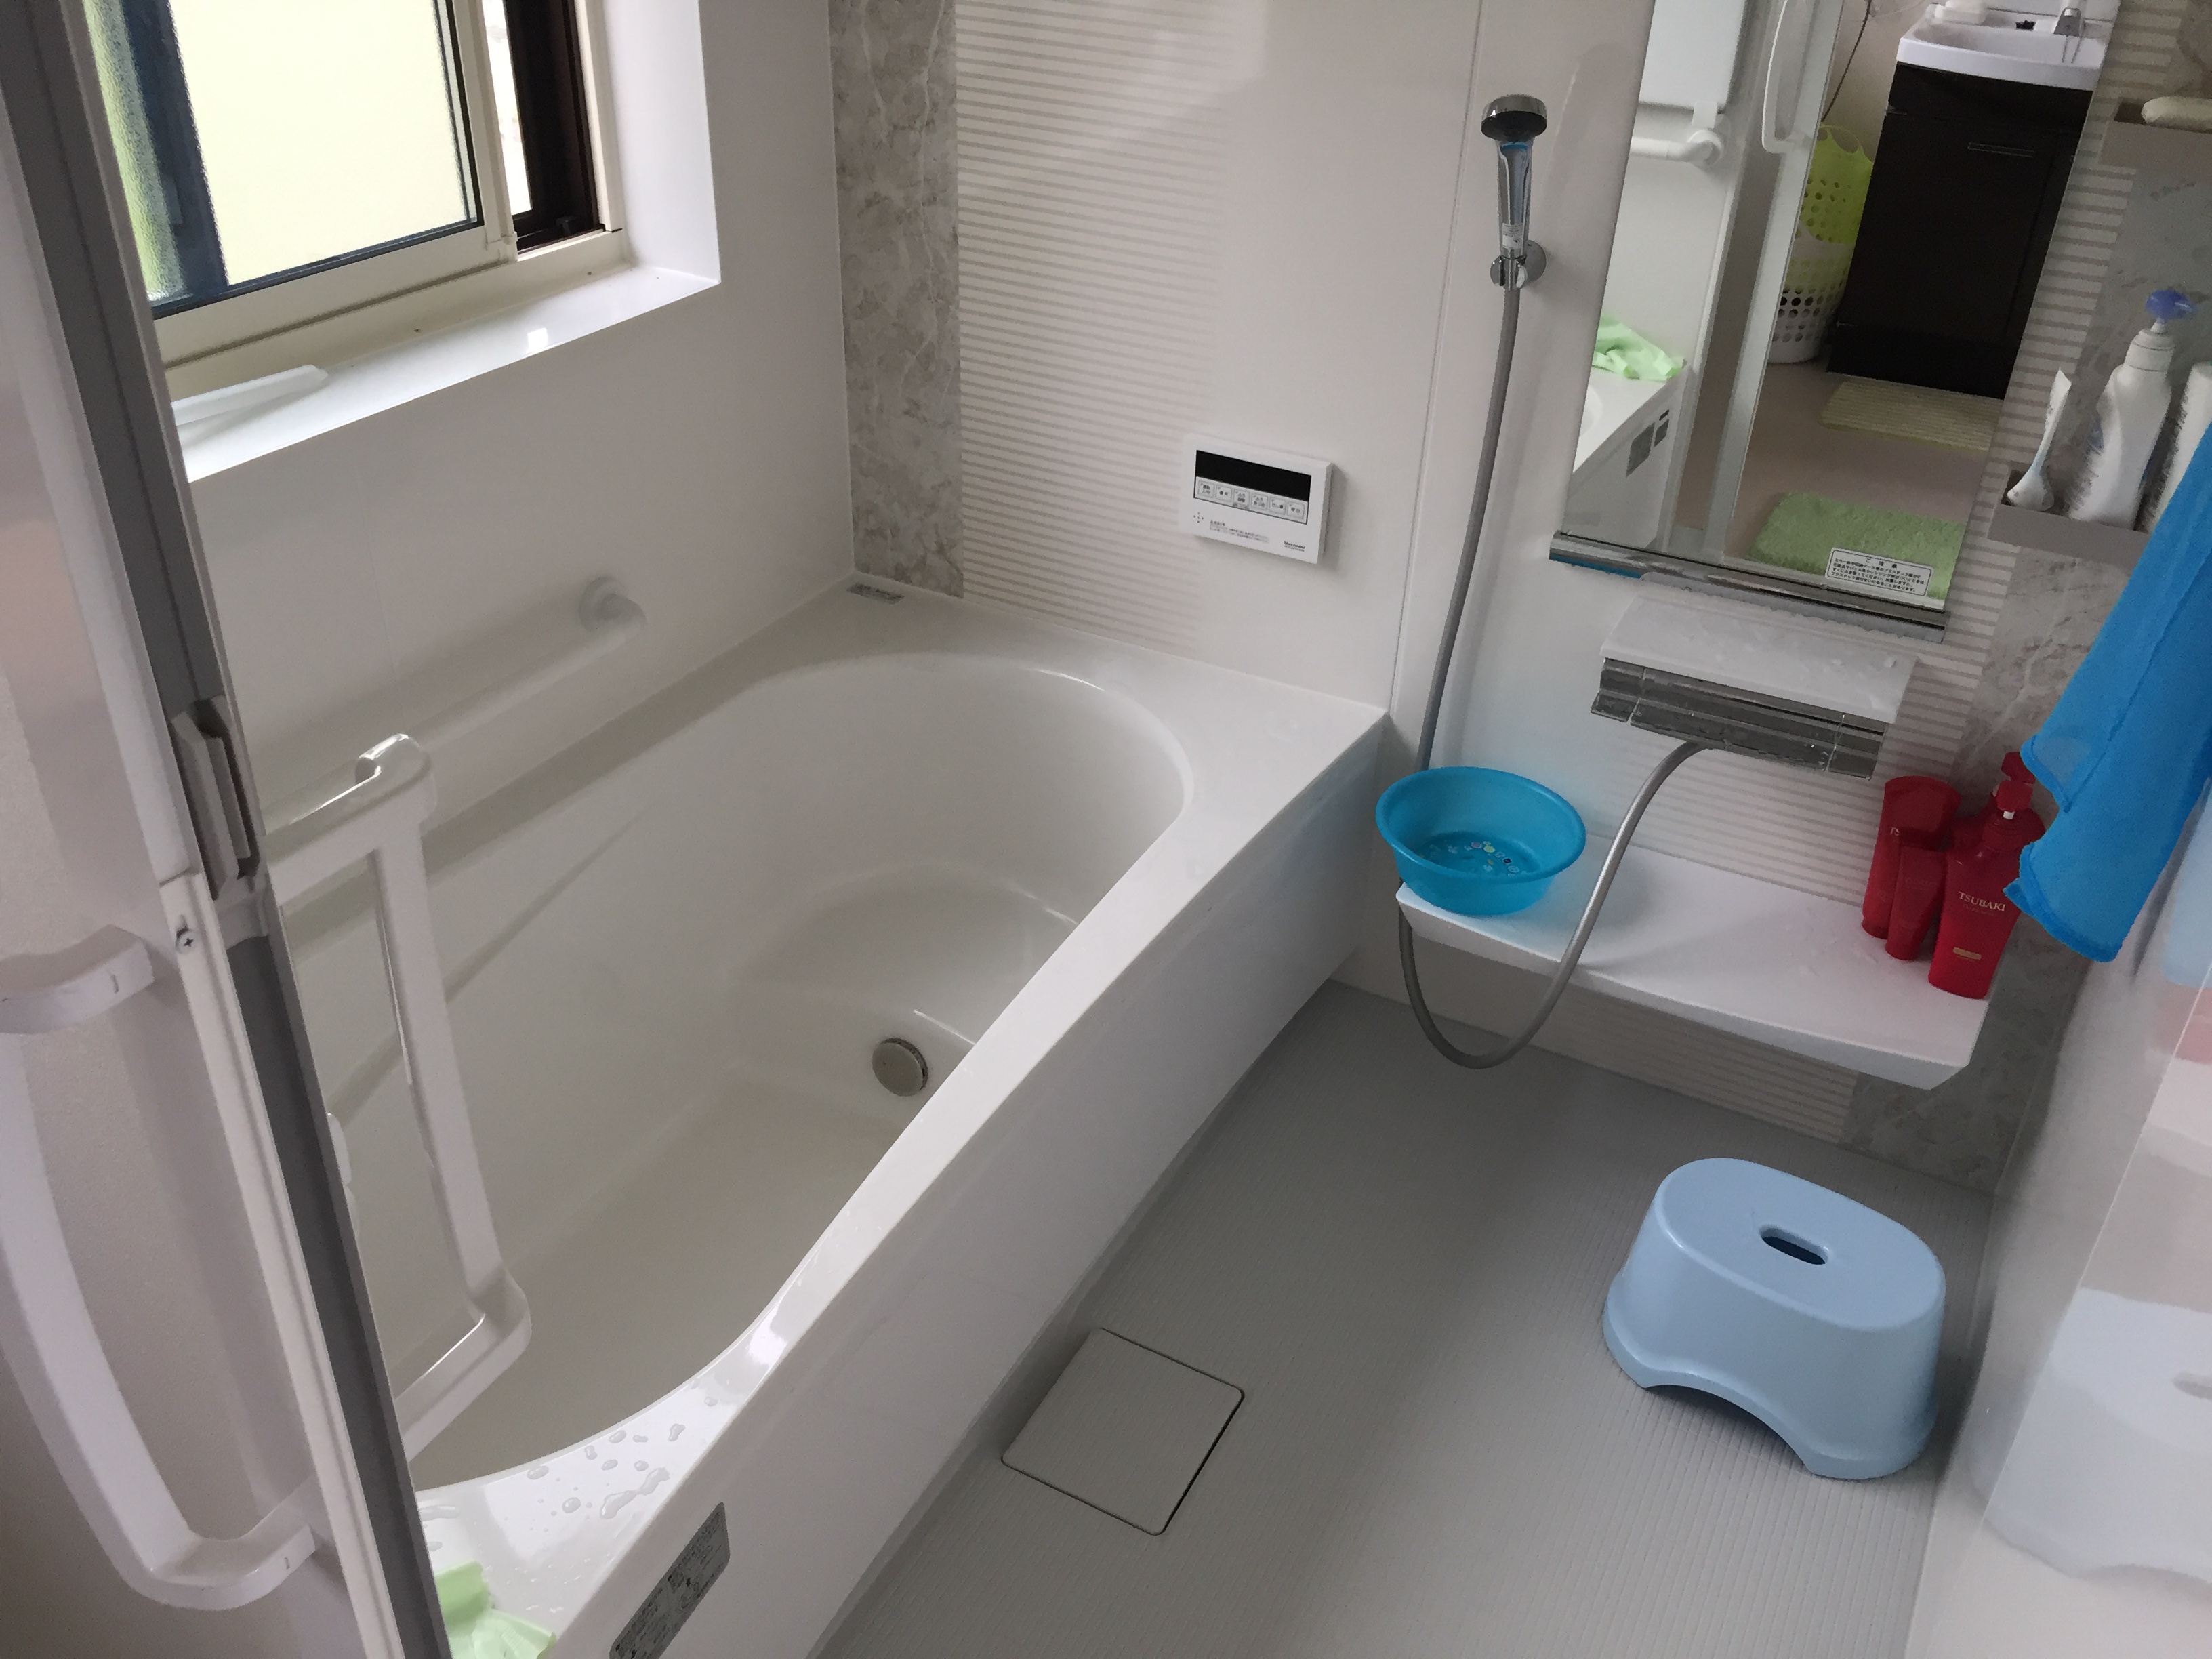 福島県会津若松市の住宅で、タカラスタンダード製のお風呂と台所に交換した水回りリフォーム事例